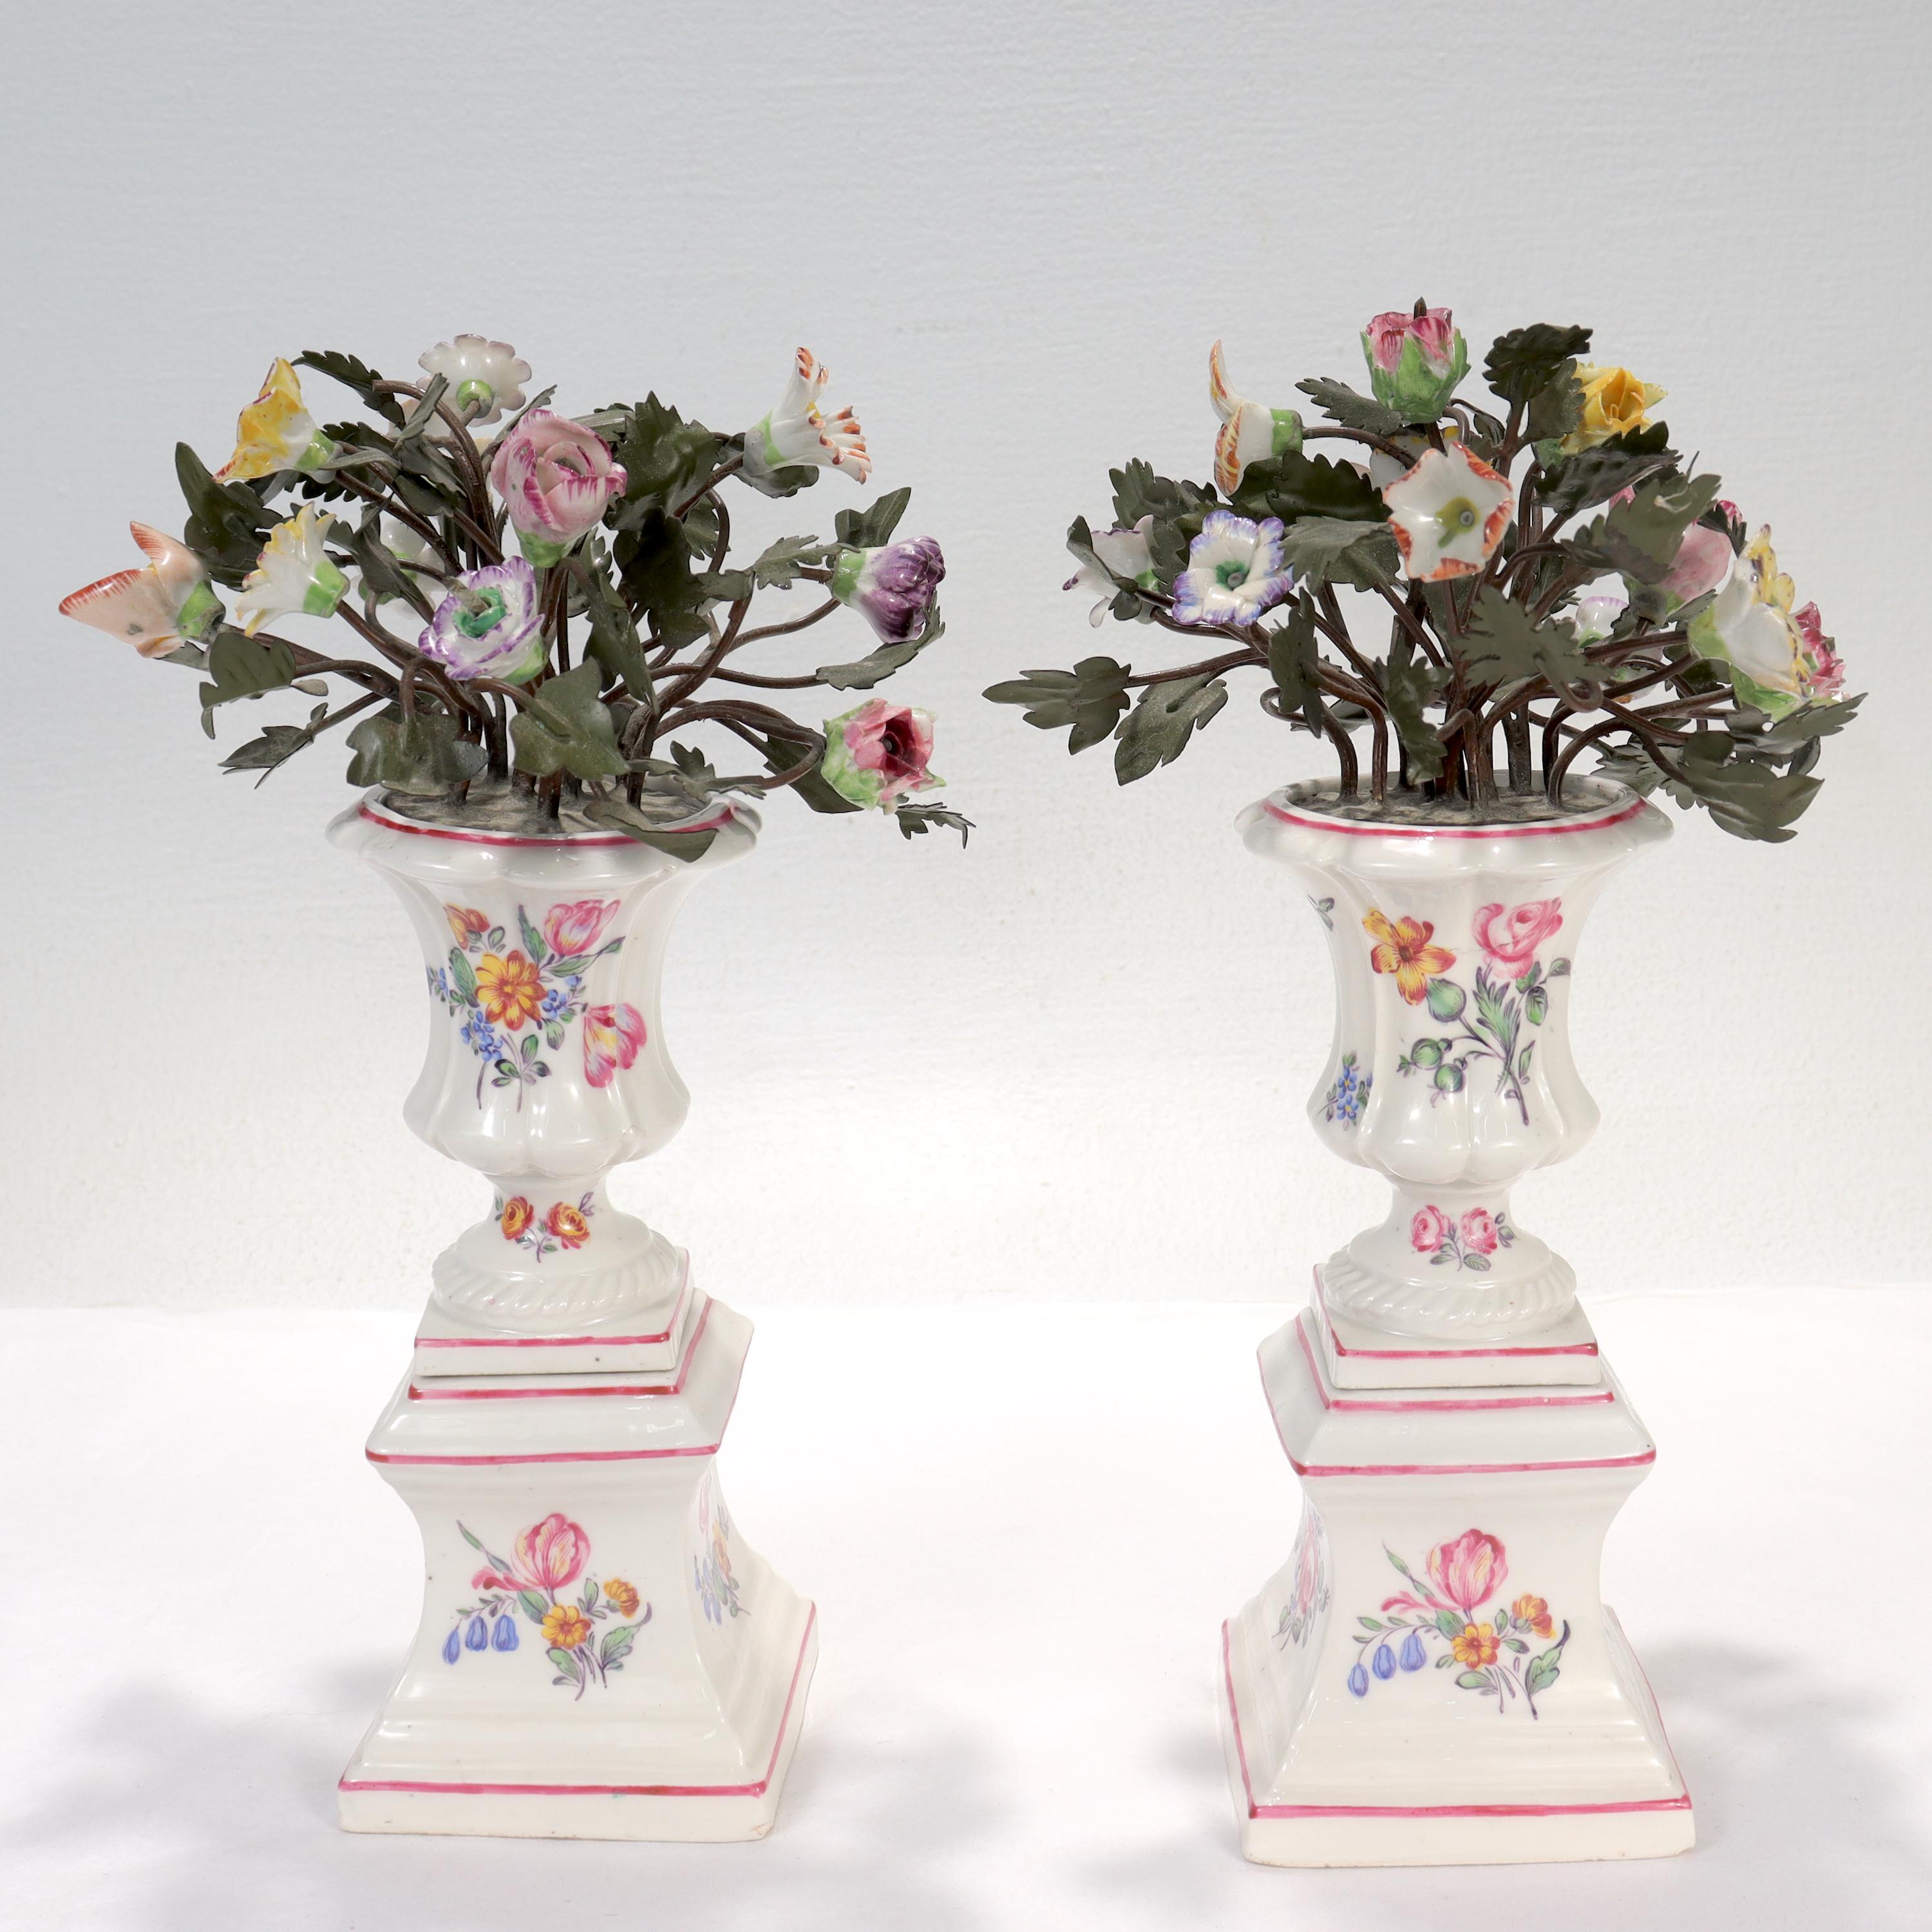 Ein feines Paar von Samson tole peinte & Porzellan Blumenvasen oder Übertöpfe.

Im Stil des 18. Jahrhunderts Mennency.

In Form von Porzellanurnen oder -vasen, handbemalt mit floralen Motiven, die gemalte 